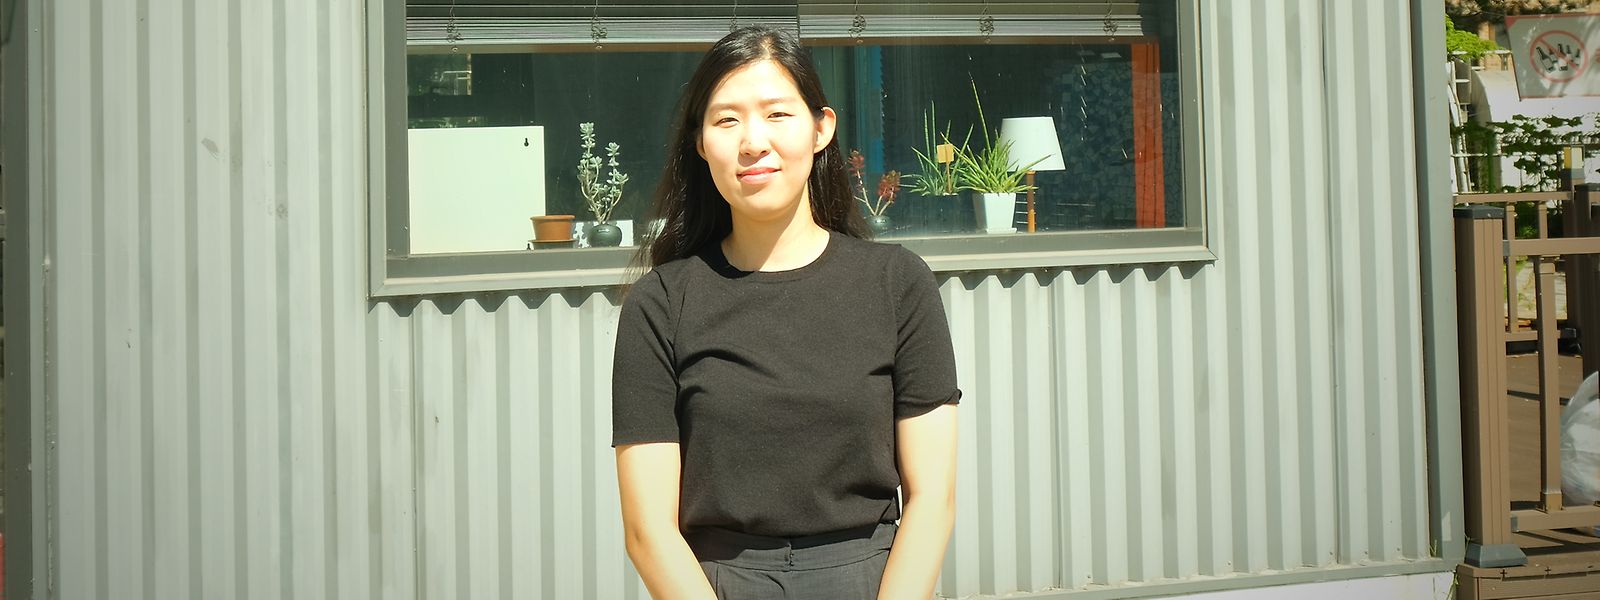 Youjin Moon arbeitet für die NGO „Youth Welfare State Network“ in Seoul. Sie sagt: „Frauen werden weniger als früher diskriminiert, aber auf dem Arbeitsmarkt werden sie immer noch schlechter bezahlt und behandelt als Männer."